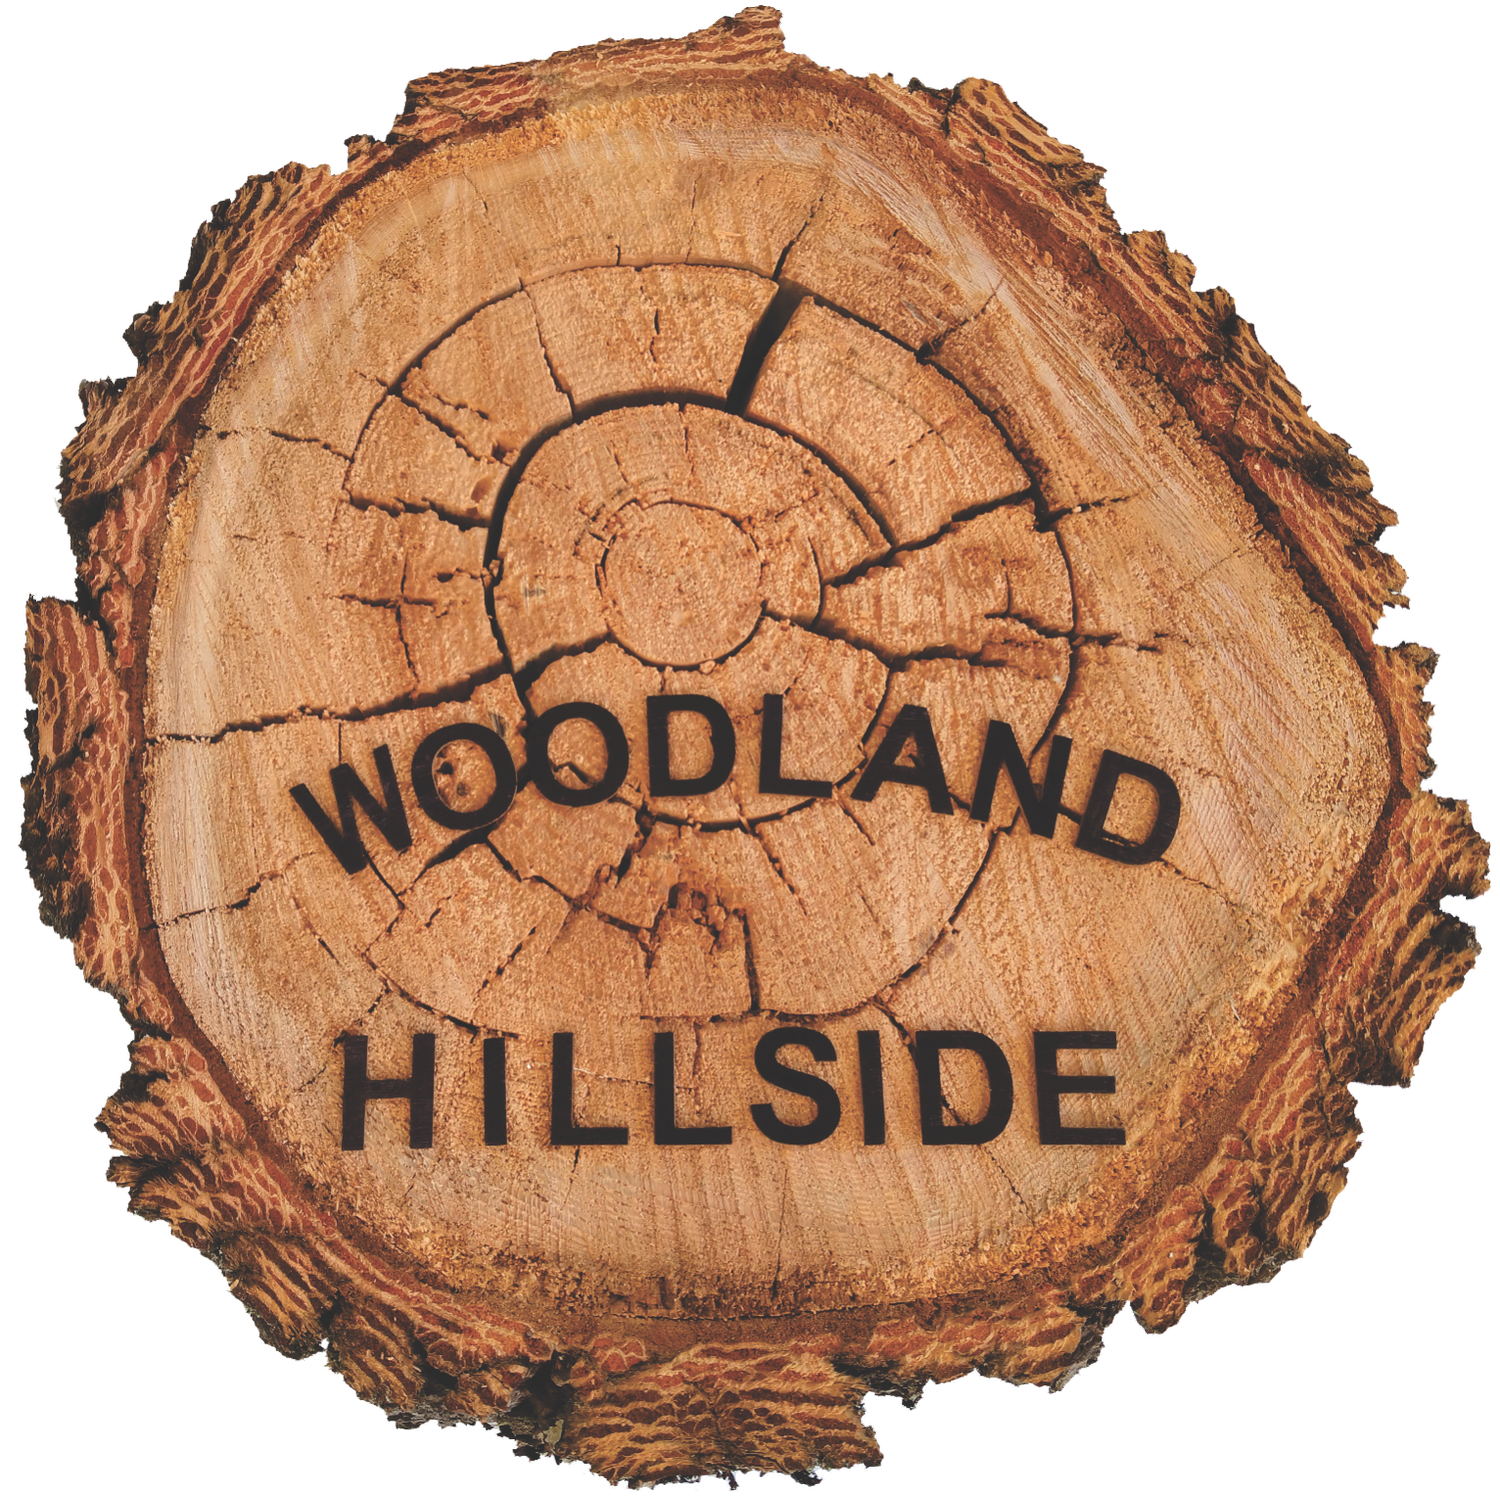 Woodand Hillside